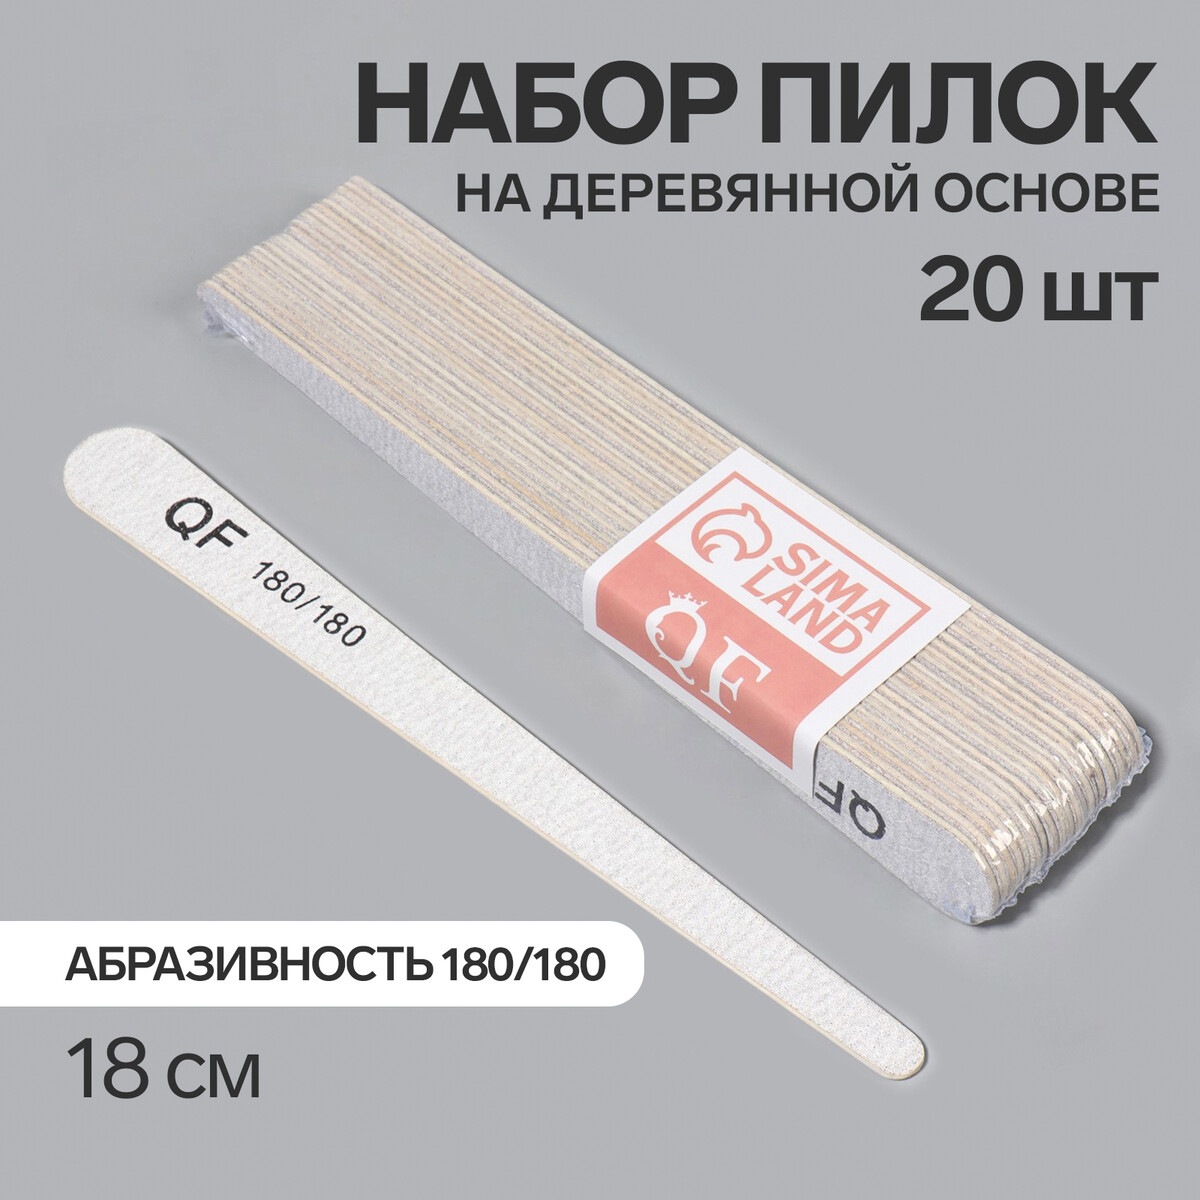 Пилка-наждак, набор 20 шт, деревянная основа, абразивность 180/180, 18 см, цвет серый основа и сменные файлы для пилки 18 см 10 шт абразивность 100